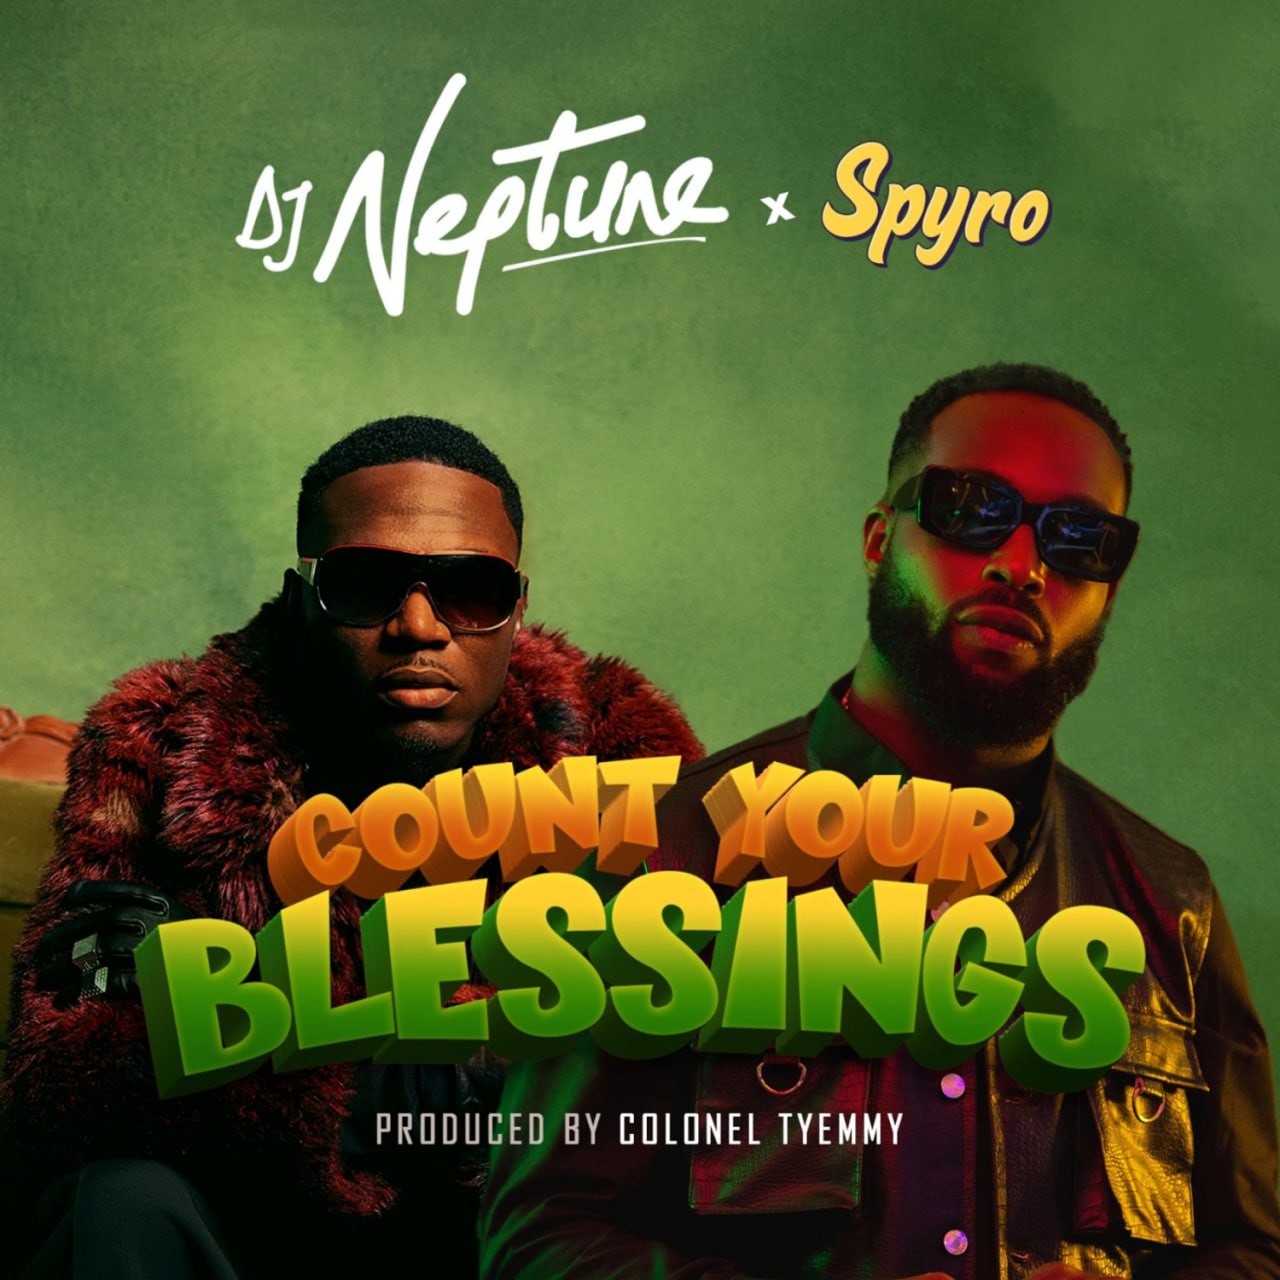 Count Your Blessings - DJ Neptune ft. Spyro